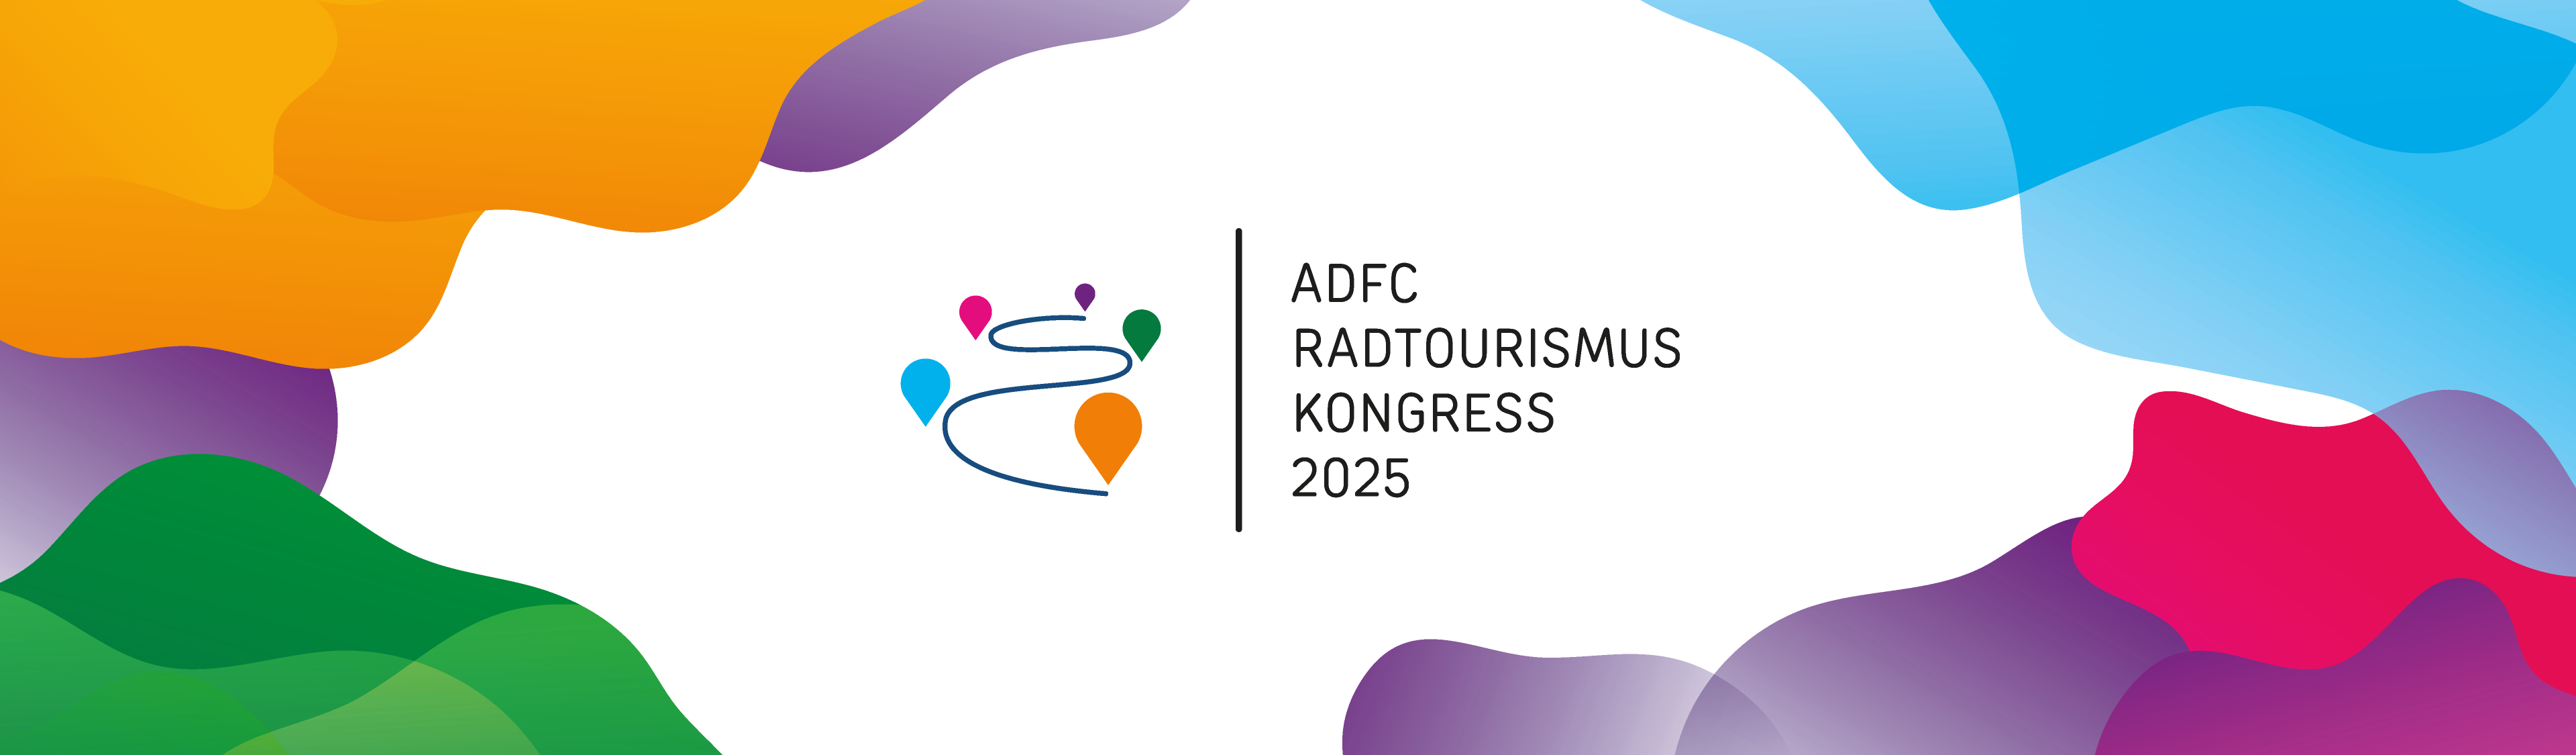 ADFC Radtourismuskongress Logo